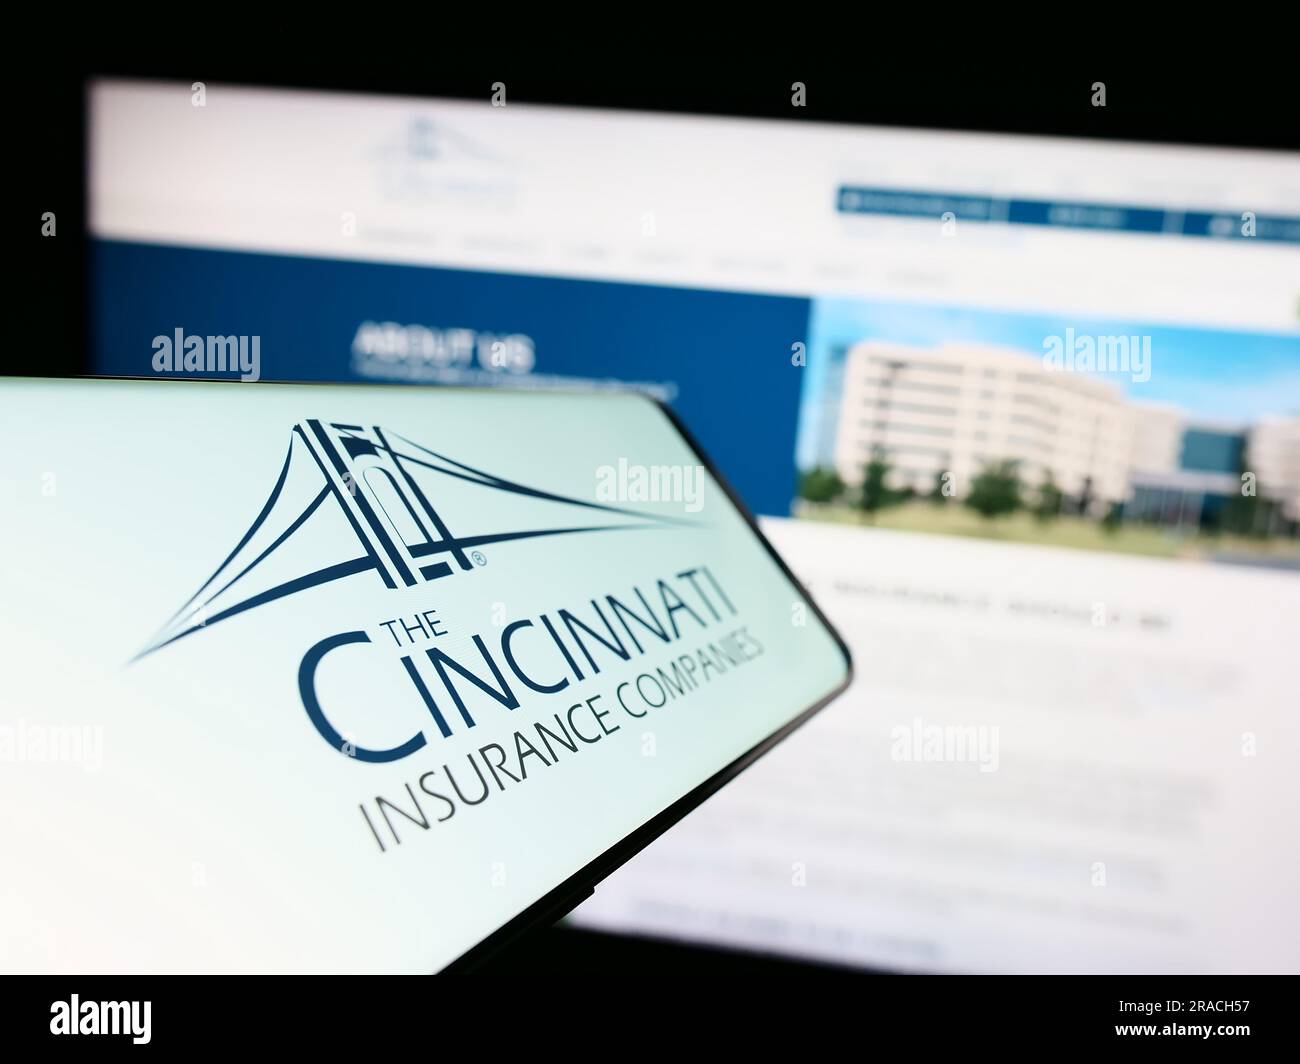 Cellulare con logo della società americana Cincinnati Financial Corporation sullo schermo davanti al sito Web. Mettere a fuoco il display centrale sinistro del telefono. Foto Stock